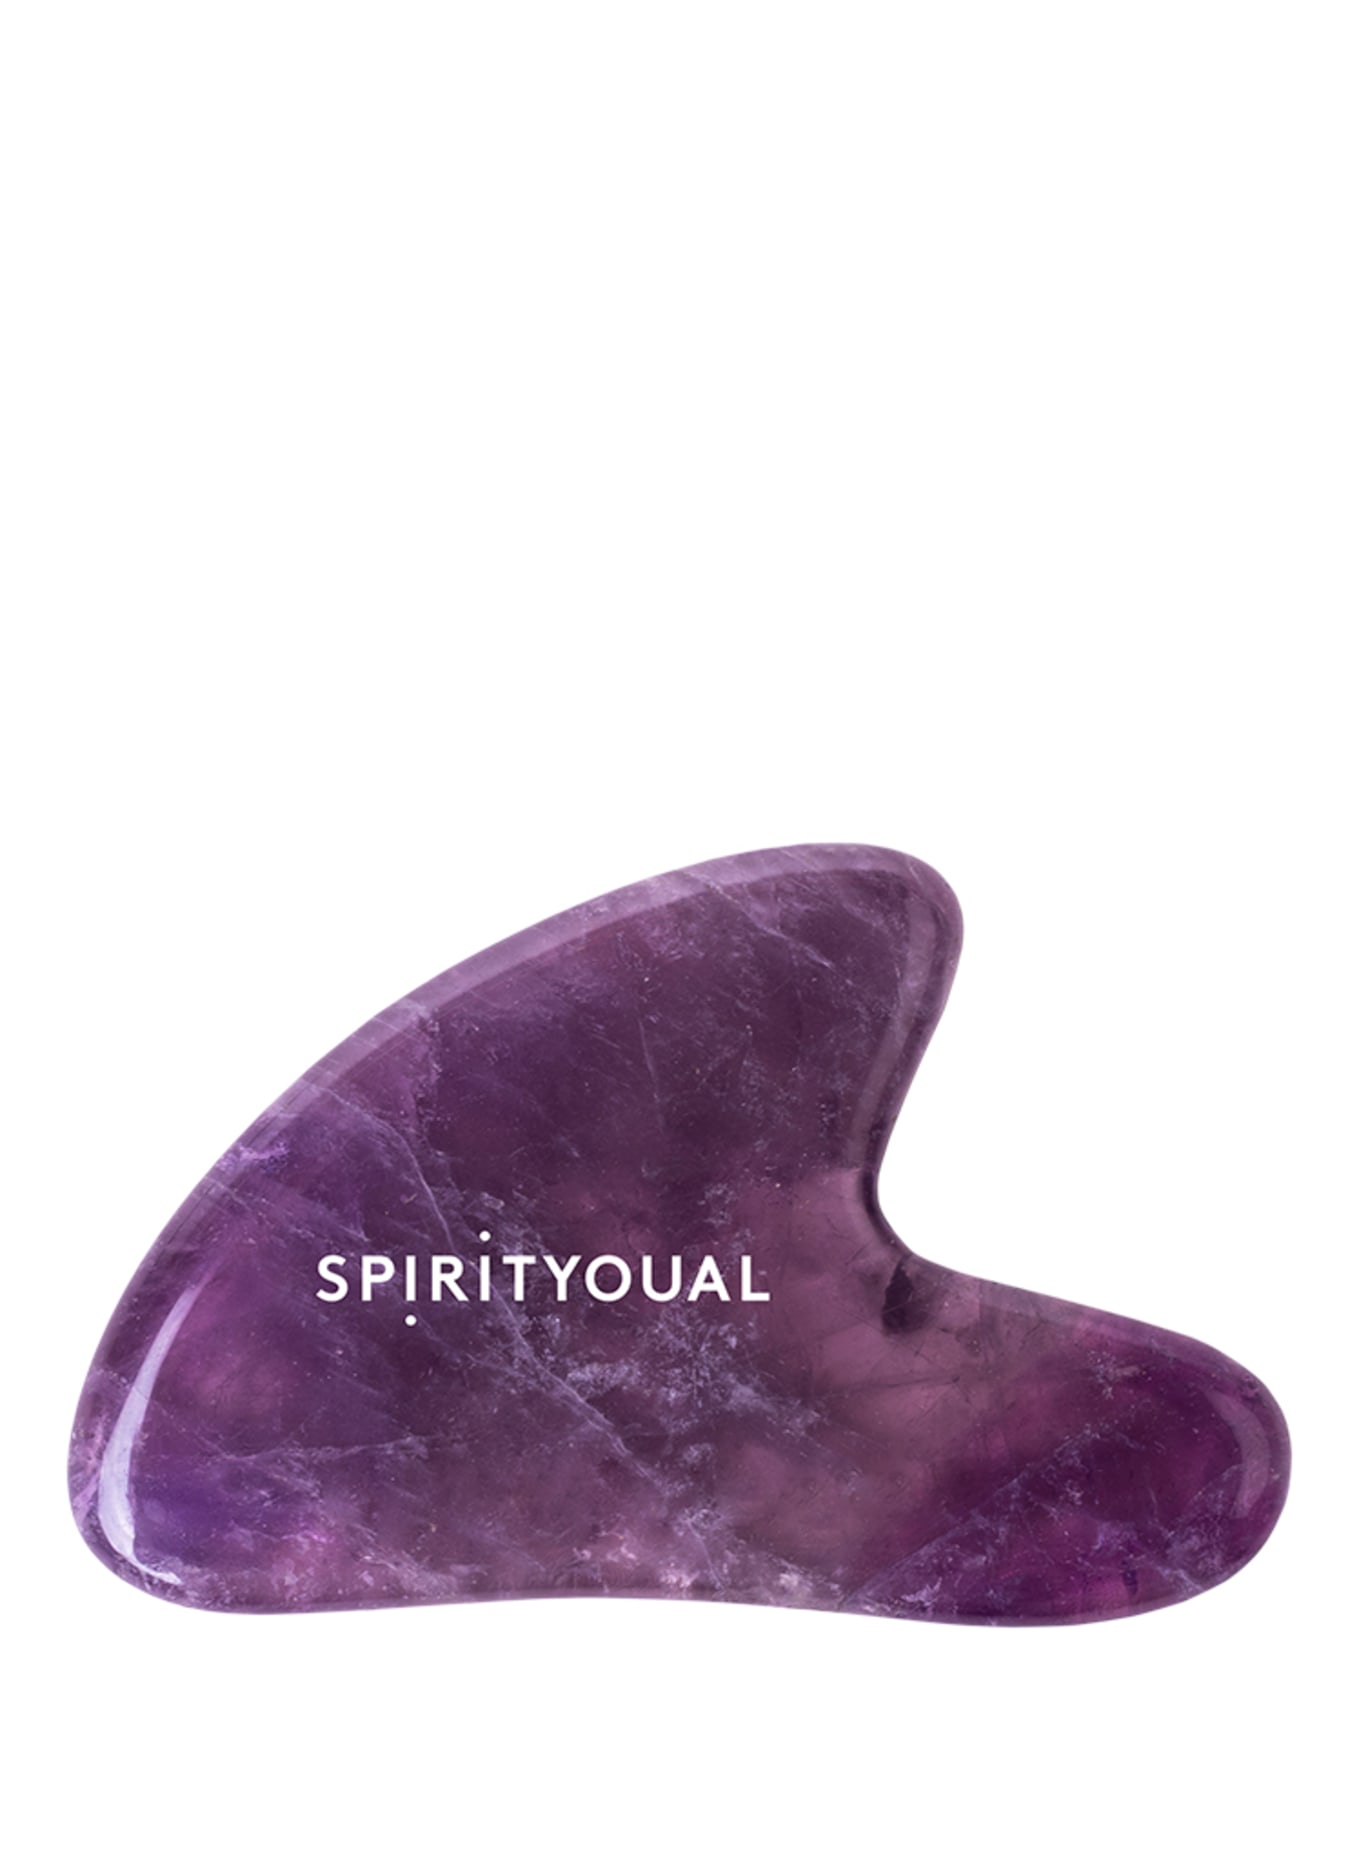 SPIRITYOUAL THE AMETHYST GUA SHA (Obrázek 1)